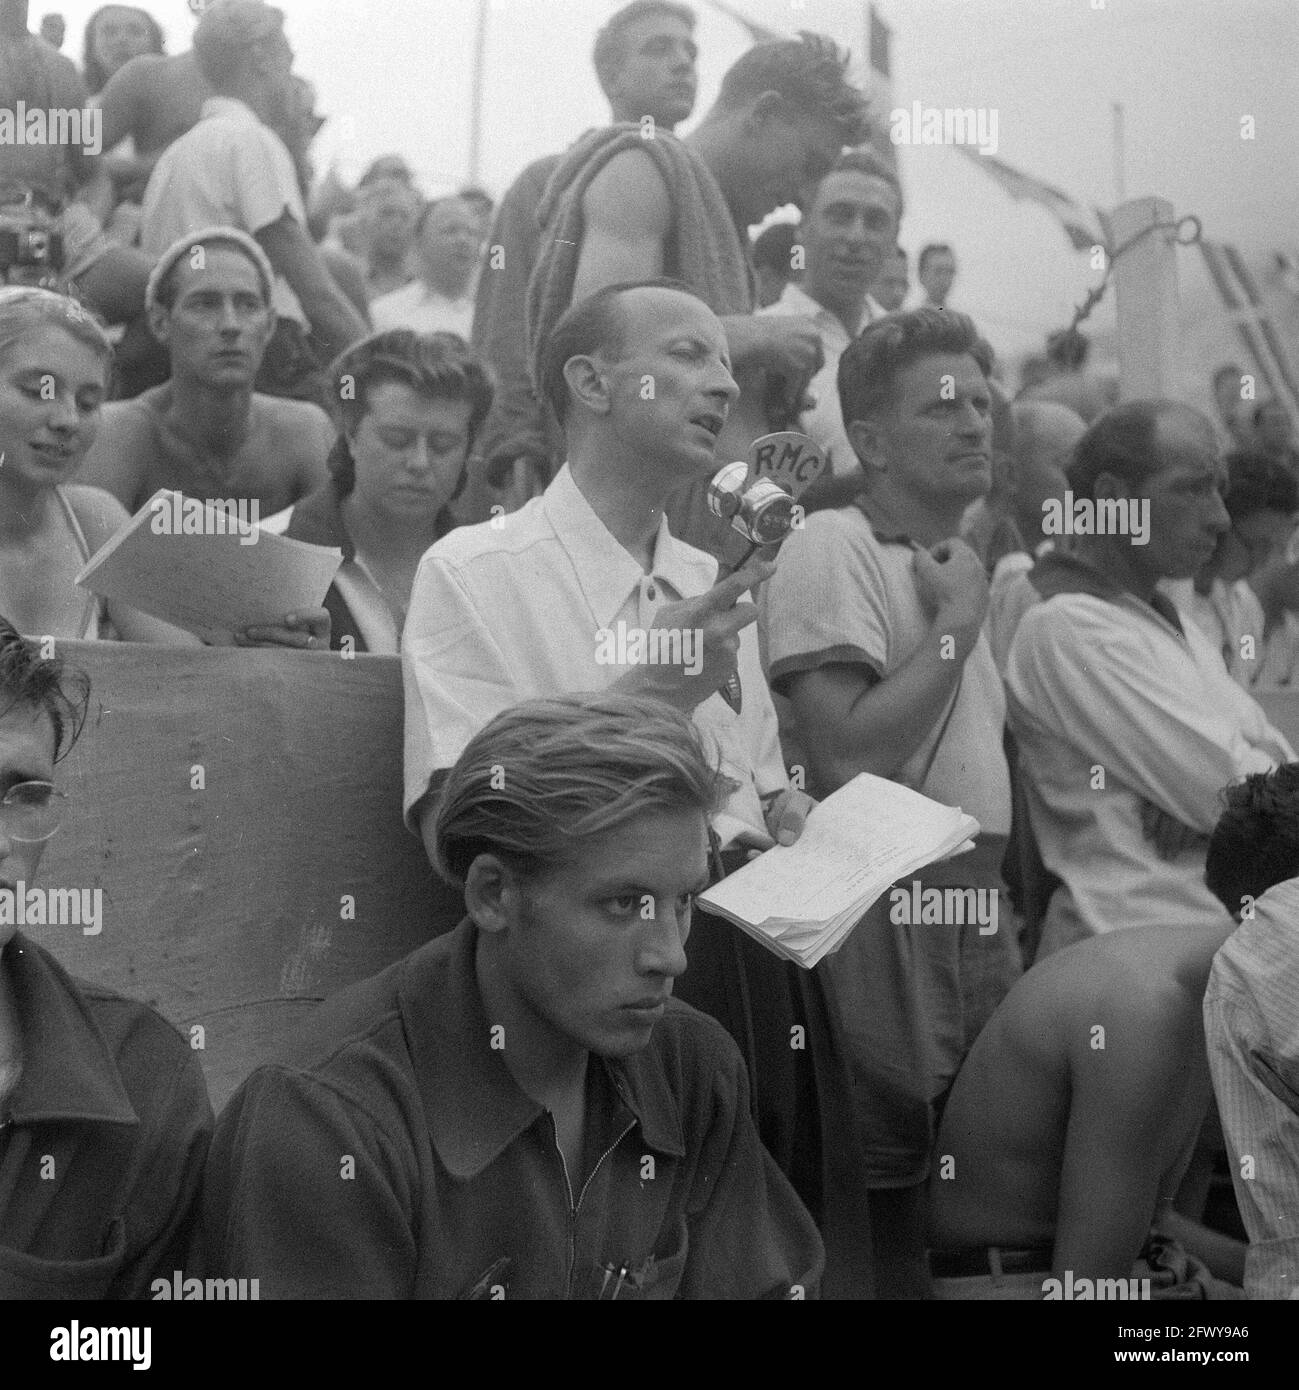 Radio reporter nel pubblico, 10 settembre 1947, nuoto, Paesi Bassi, foto agenzia stampa del xx secolo, notizie da ricordare, documentario, storici Foto Stock